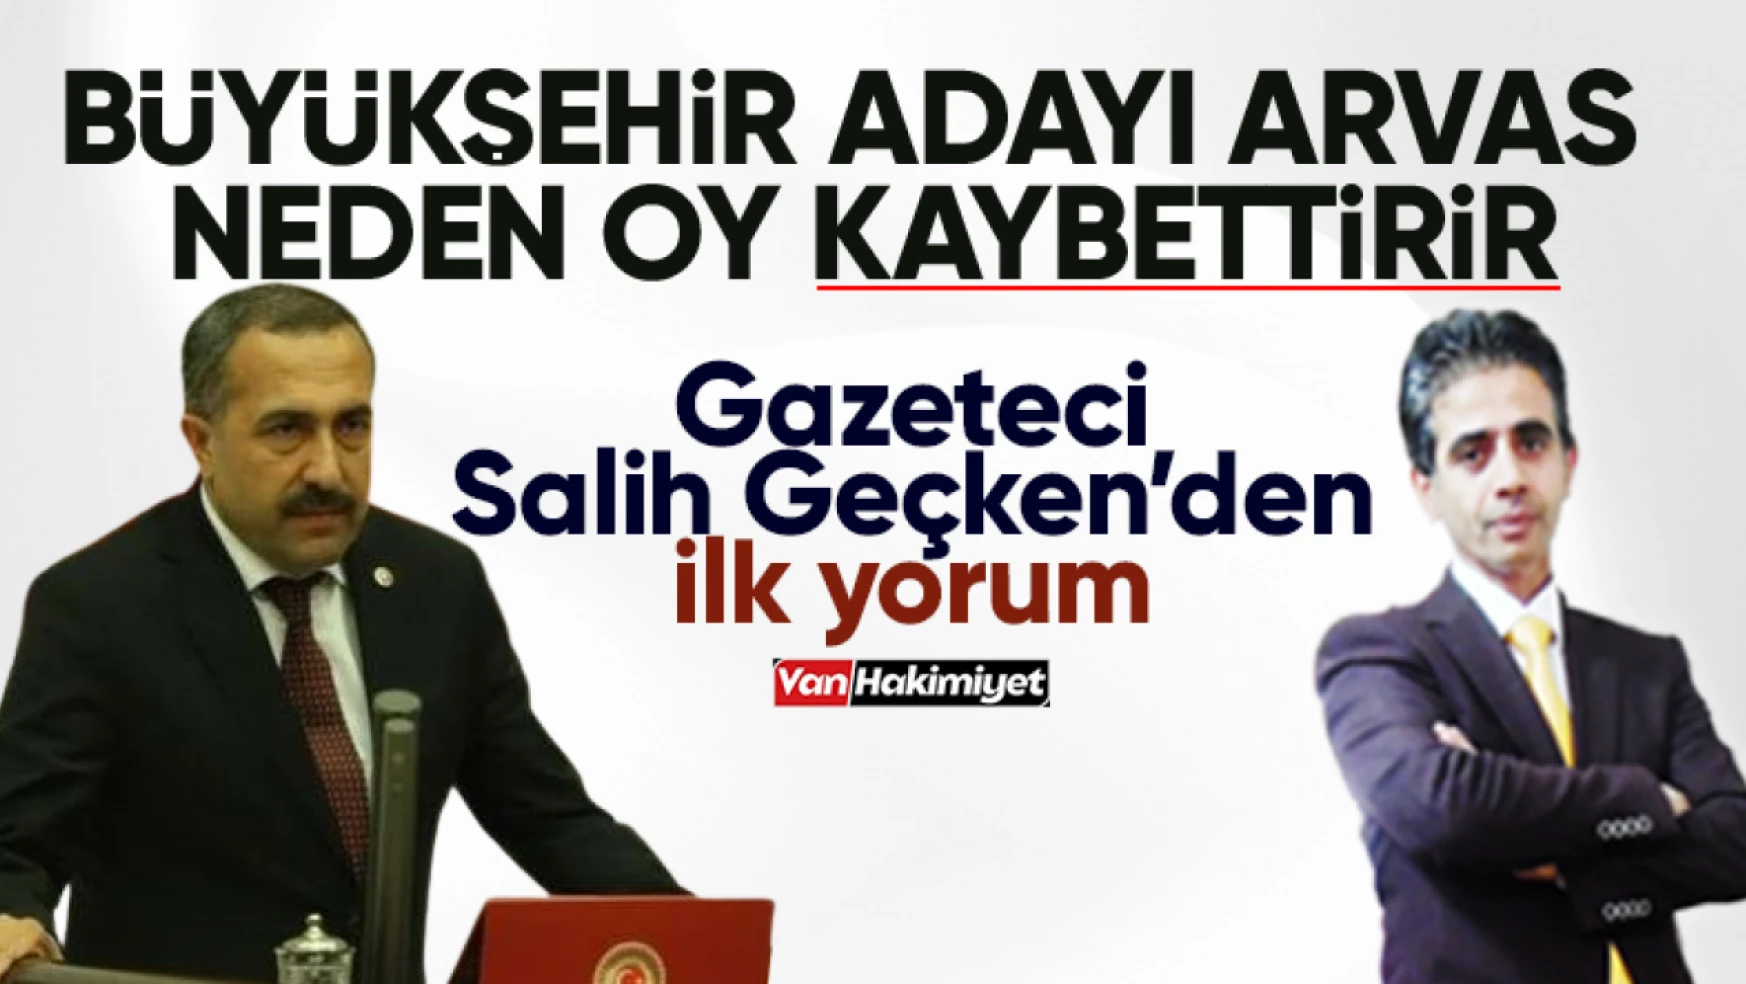 AK Parti Van Büyükşehir Adayı Arvas, neden oy kaybettirir!